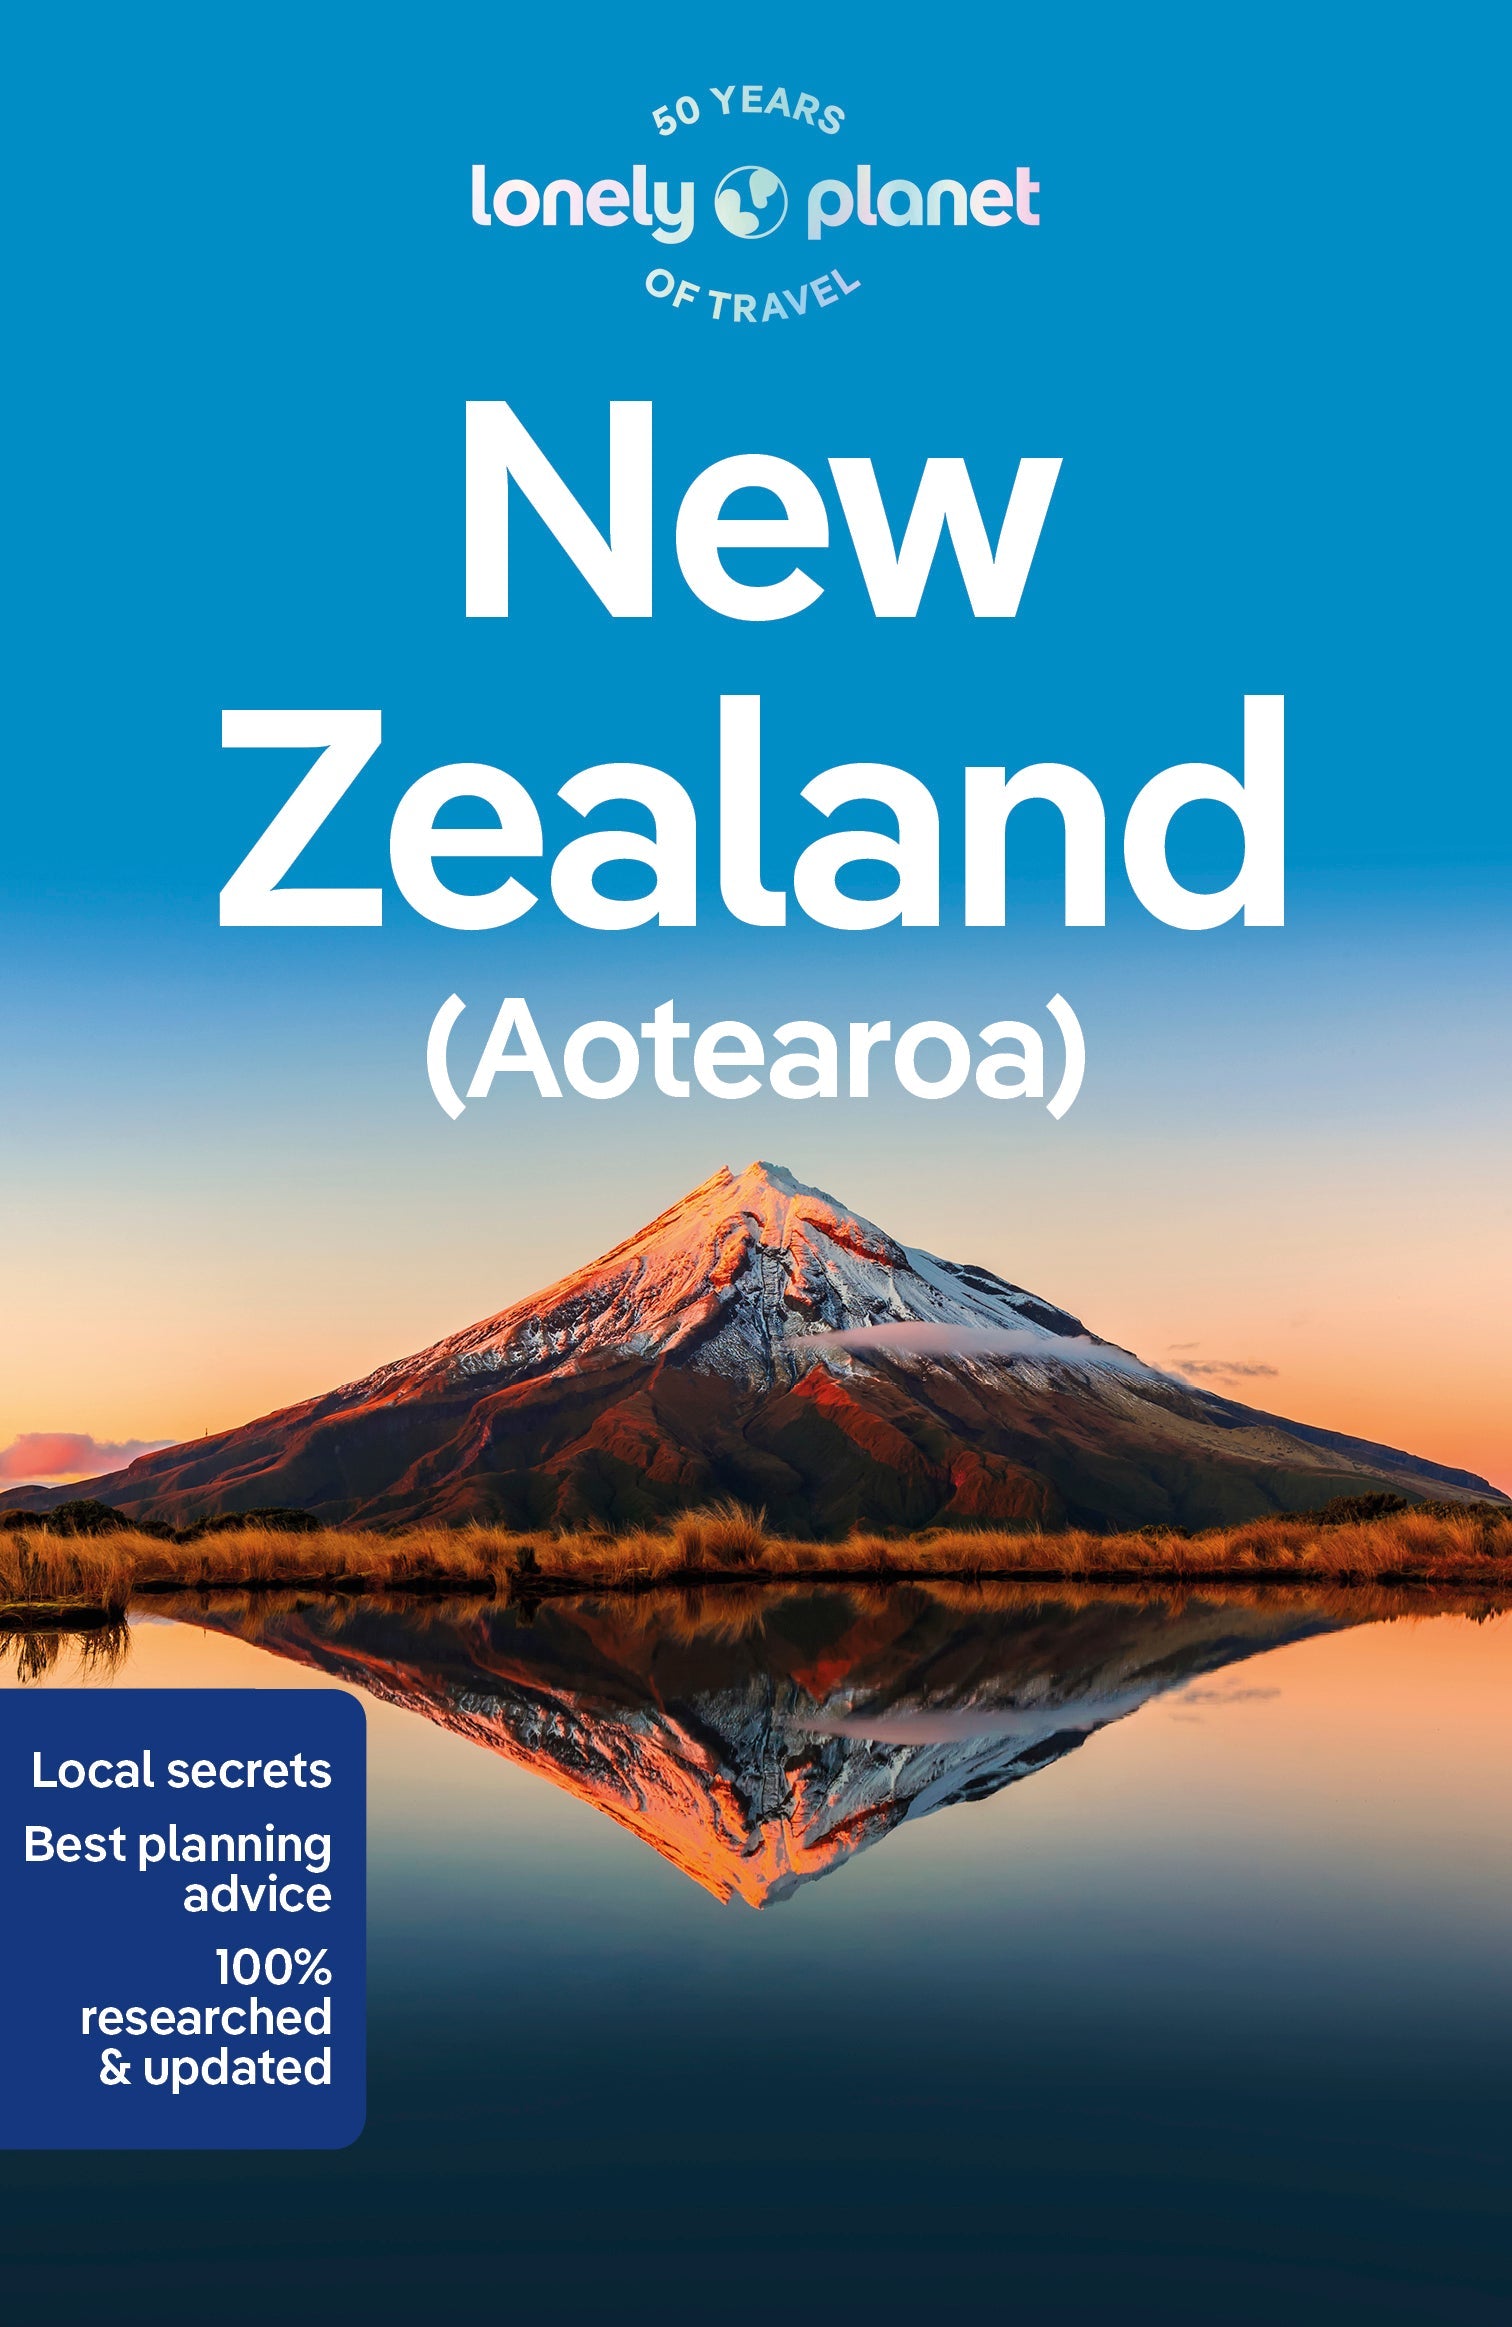 Exclusive Page For NZ | marketingparafotografos.com.br